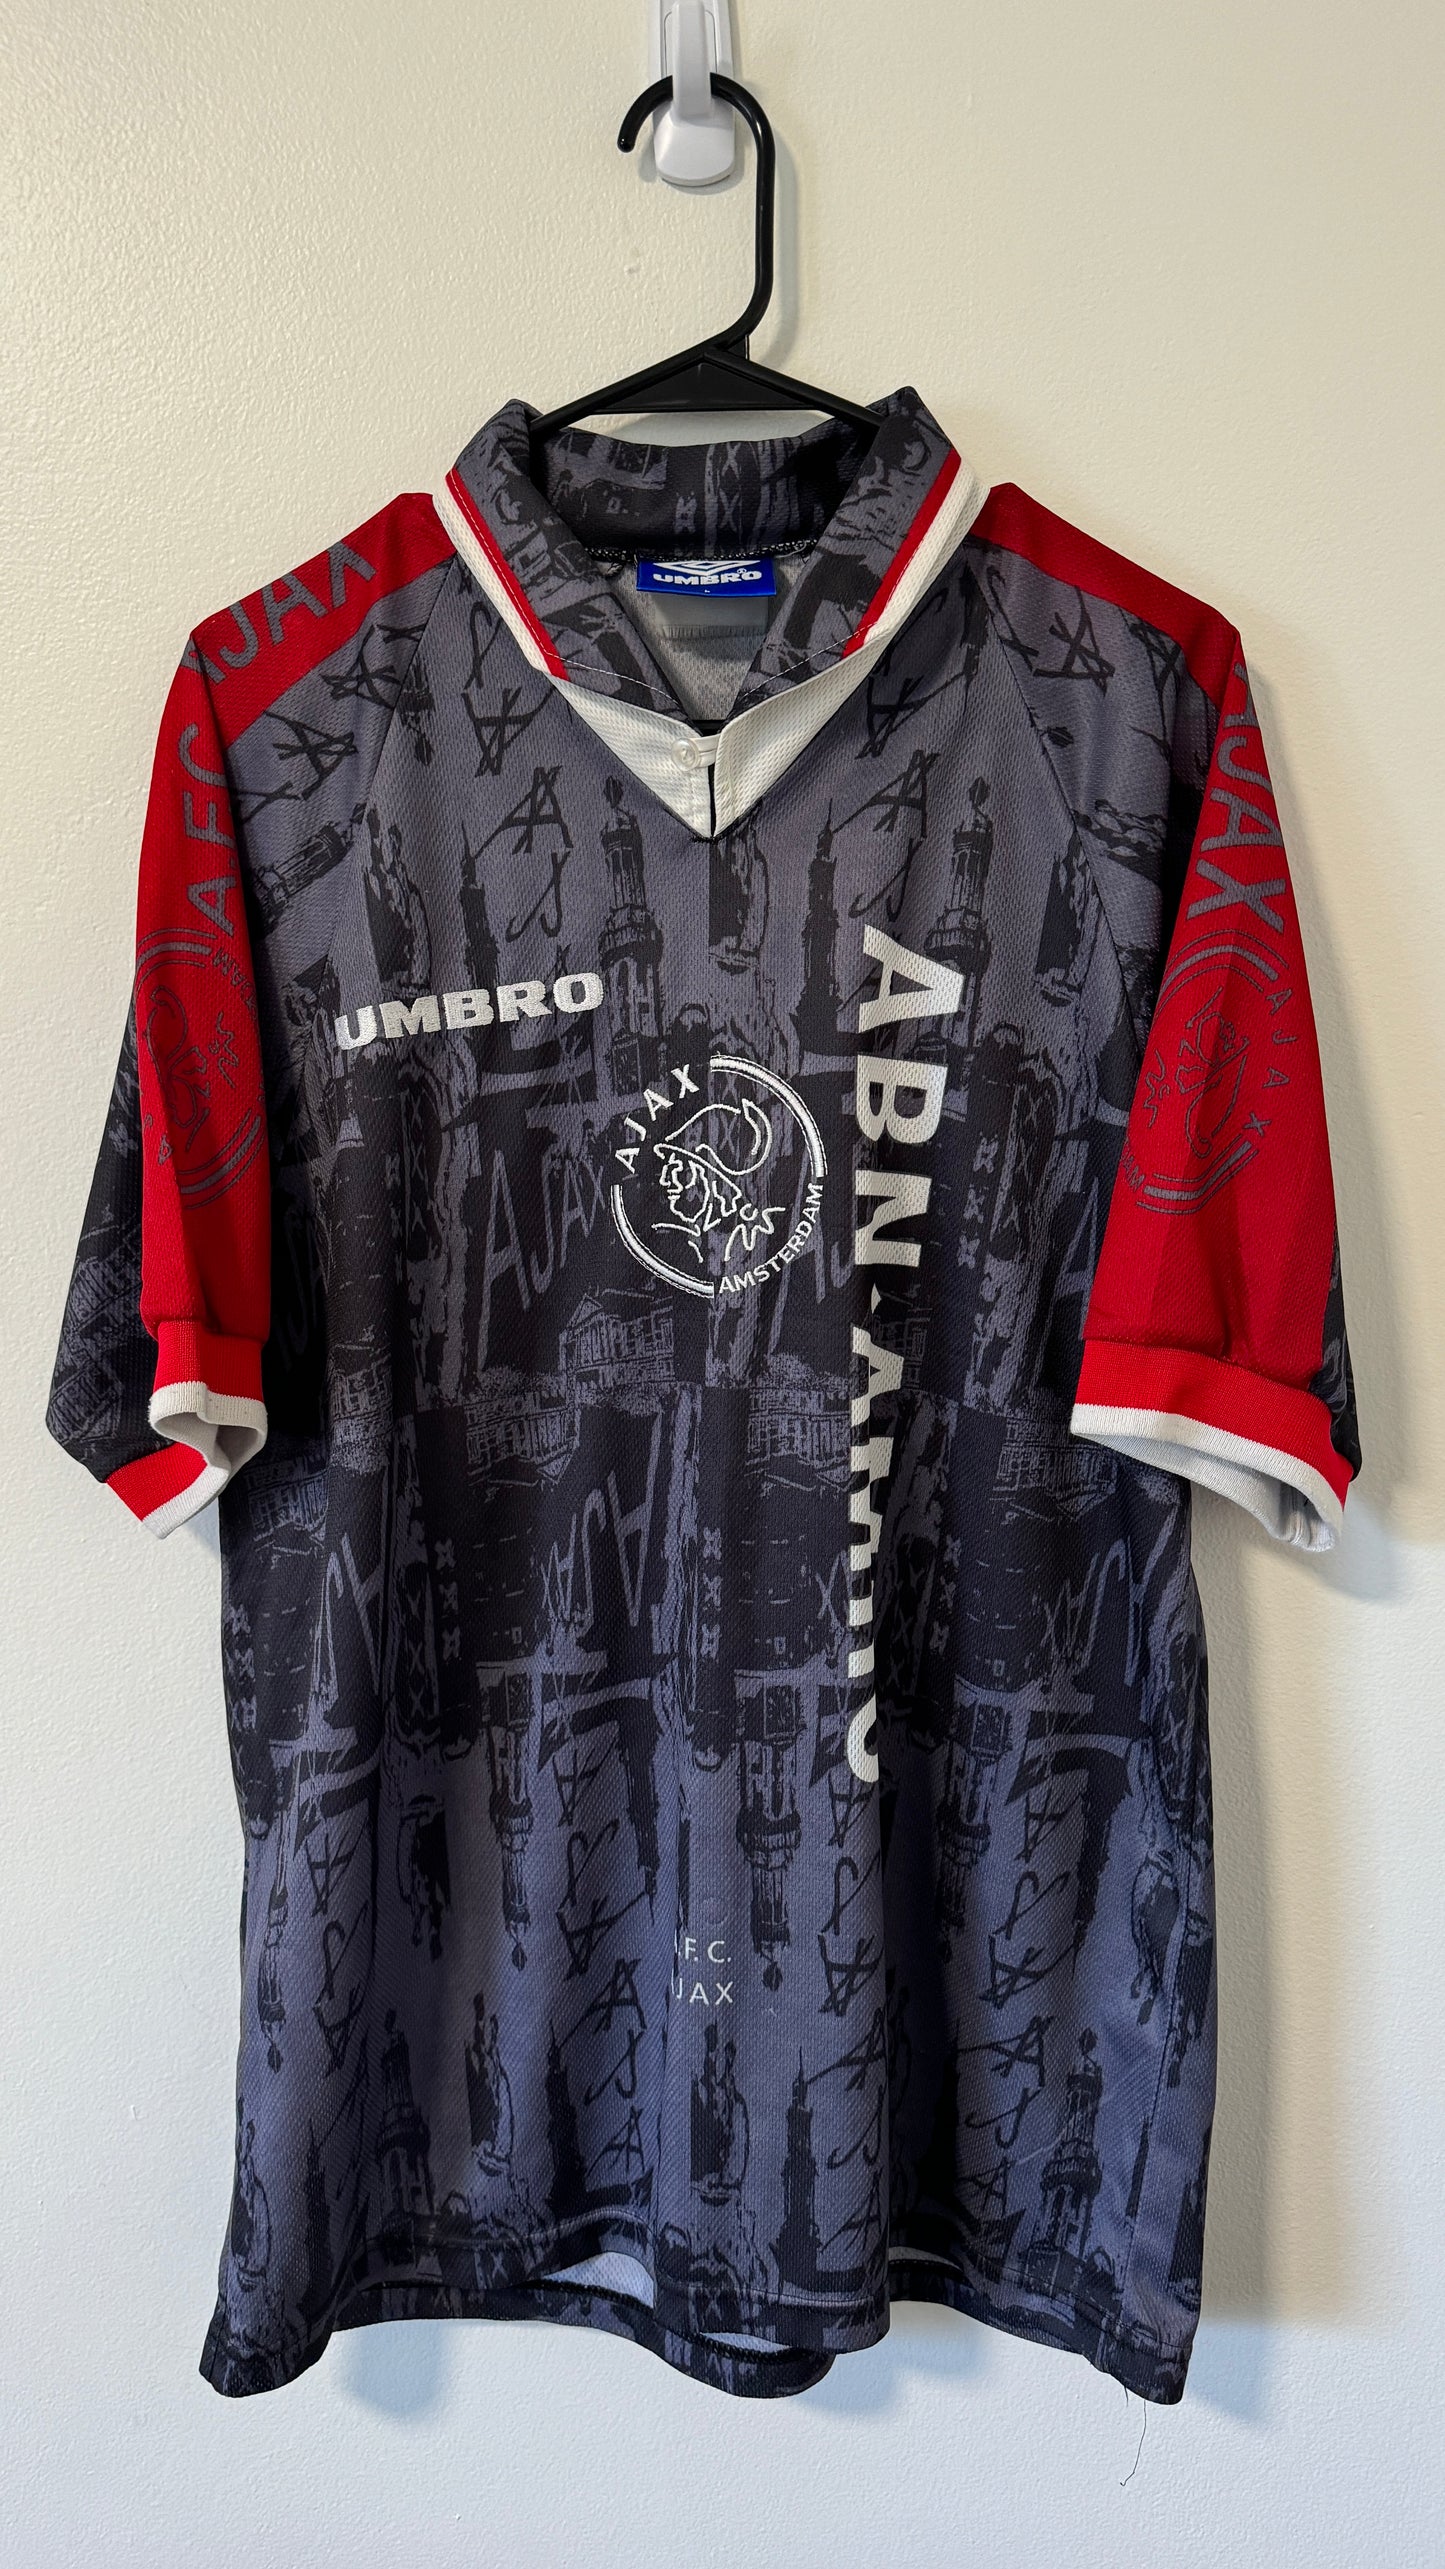 Ajax Away 1994/95 Kliuvert #9